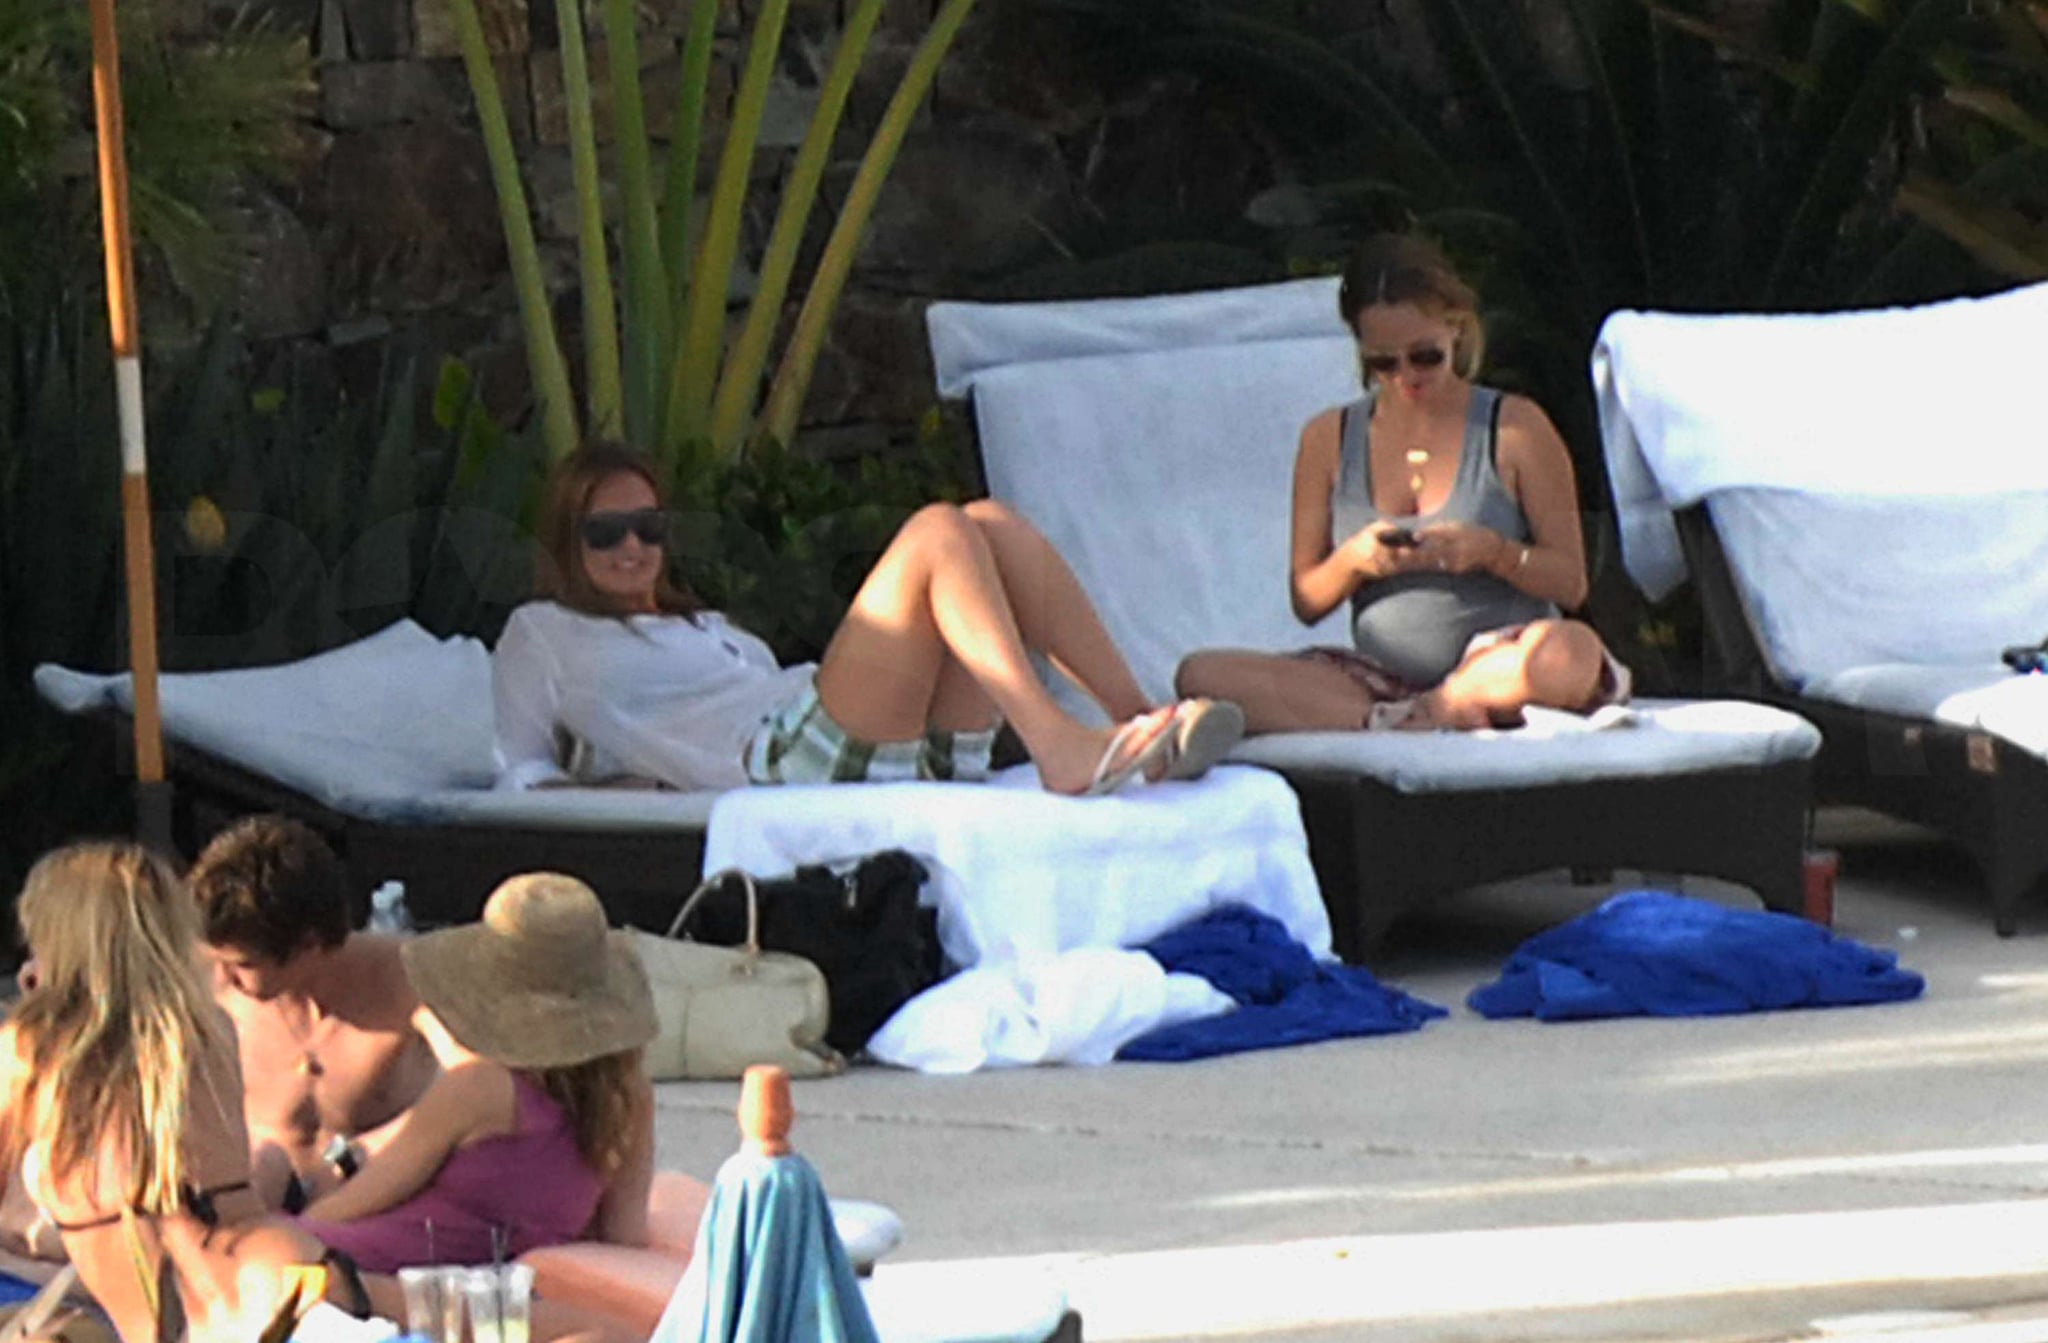 Bikini Photos of Jennifer Aniston, Cox-Arquettes, Leonardo DiCaprio, Bar Refaeli in ...